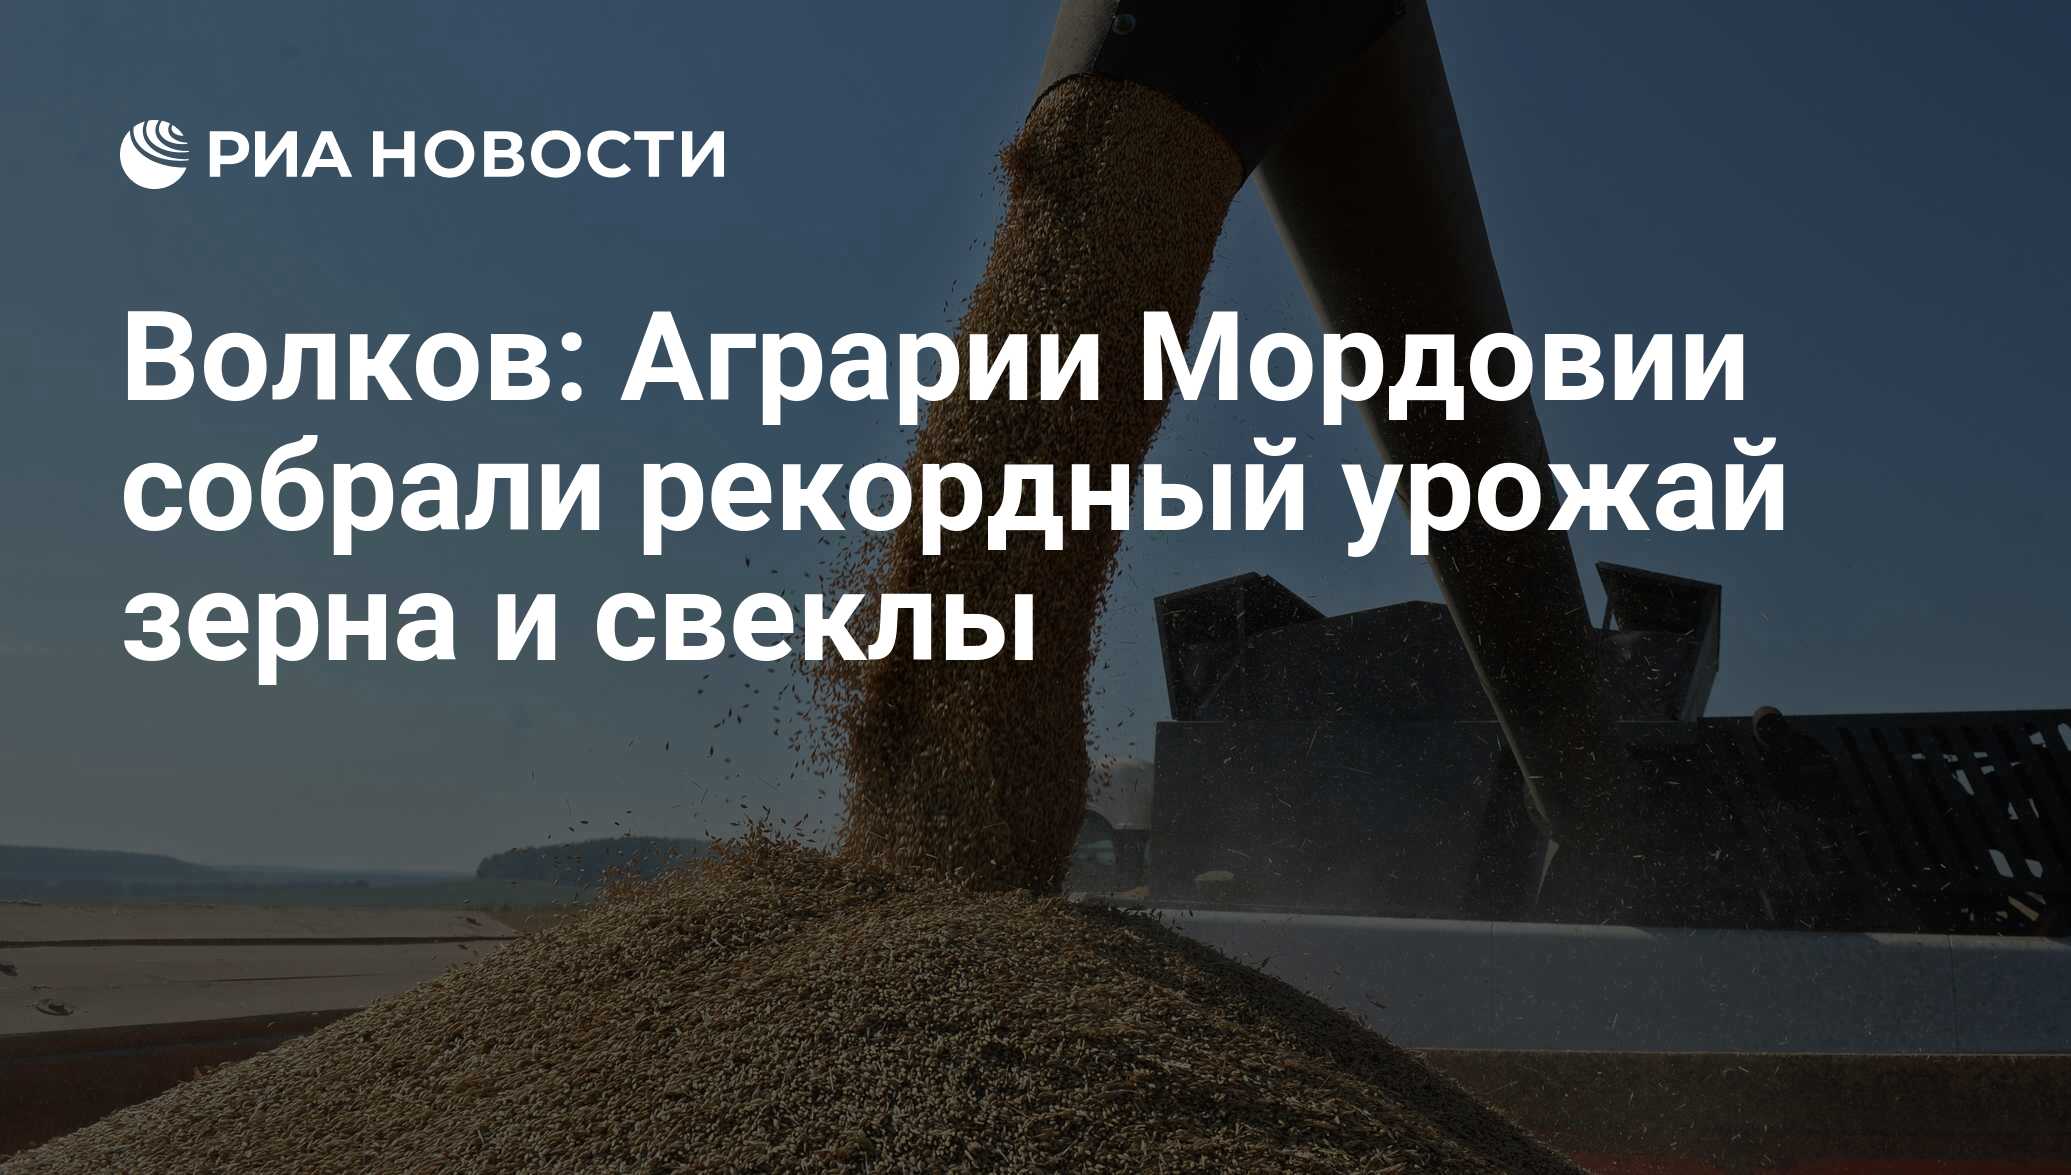 В сентябре был собран рекордный. ��🌾в России урожай зерна может достигнуть 130 млн тонн. В 2016 Г В России был собран рекордный урожай. Бангладеш хочет договориться с Россией о поставках пшеницы. Индия ожидает собрать в 2023 году рекордный урожай пшеницы.